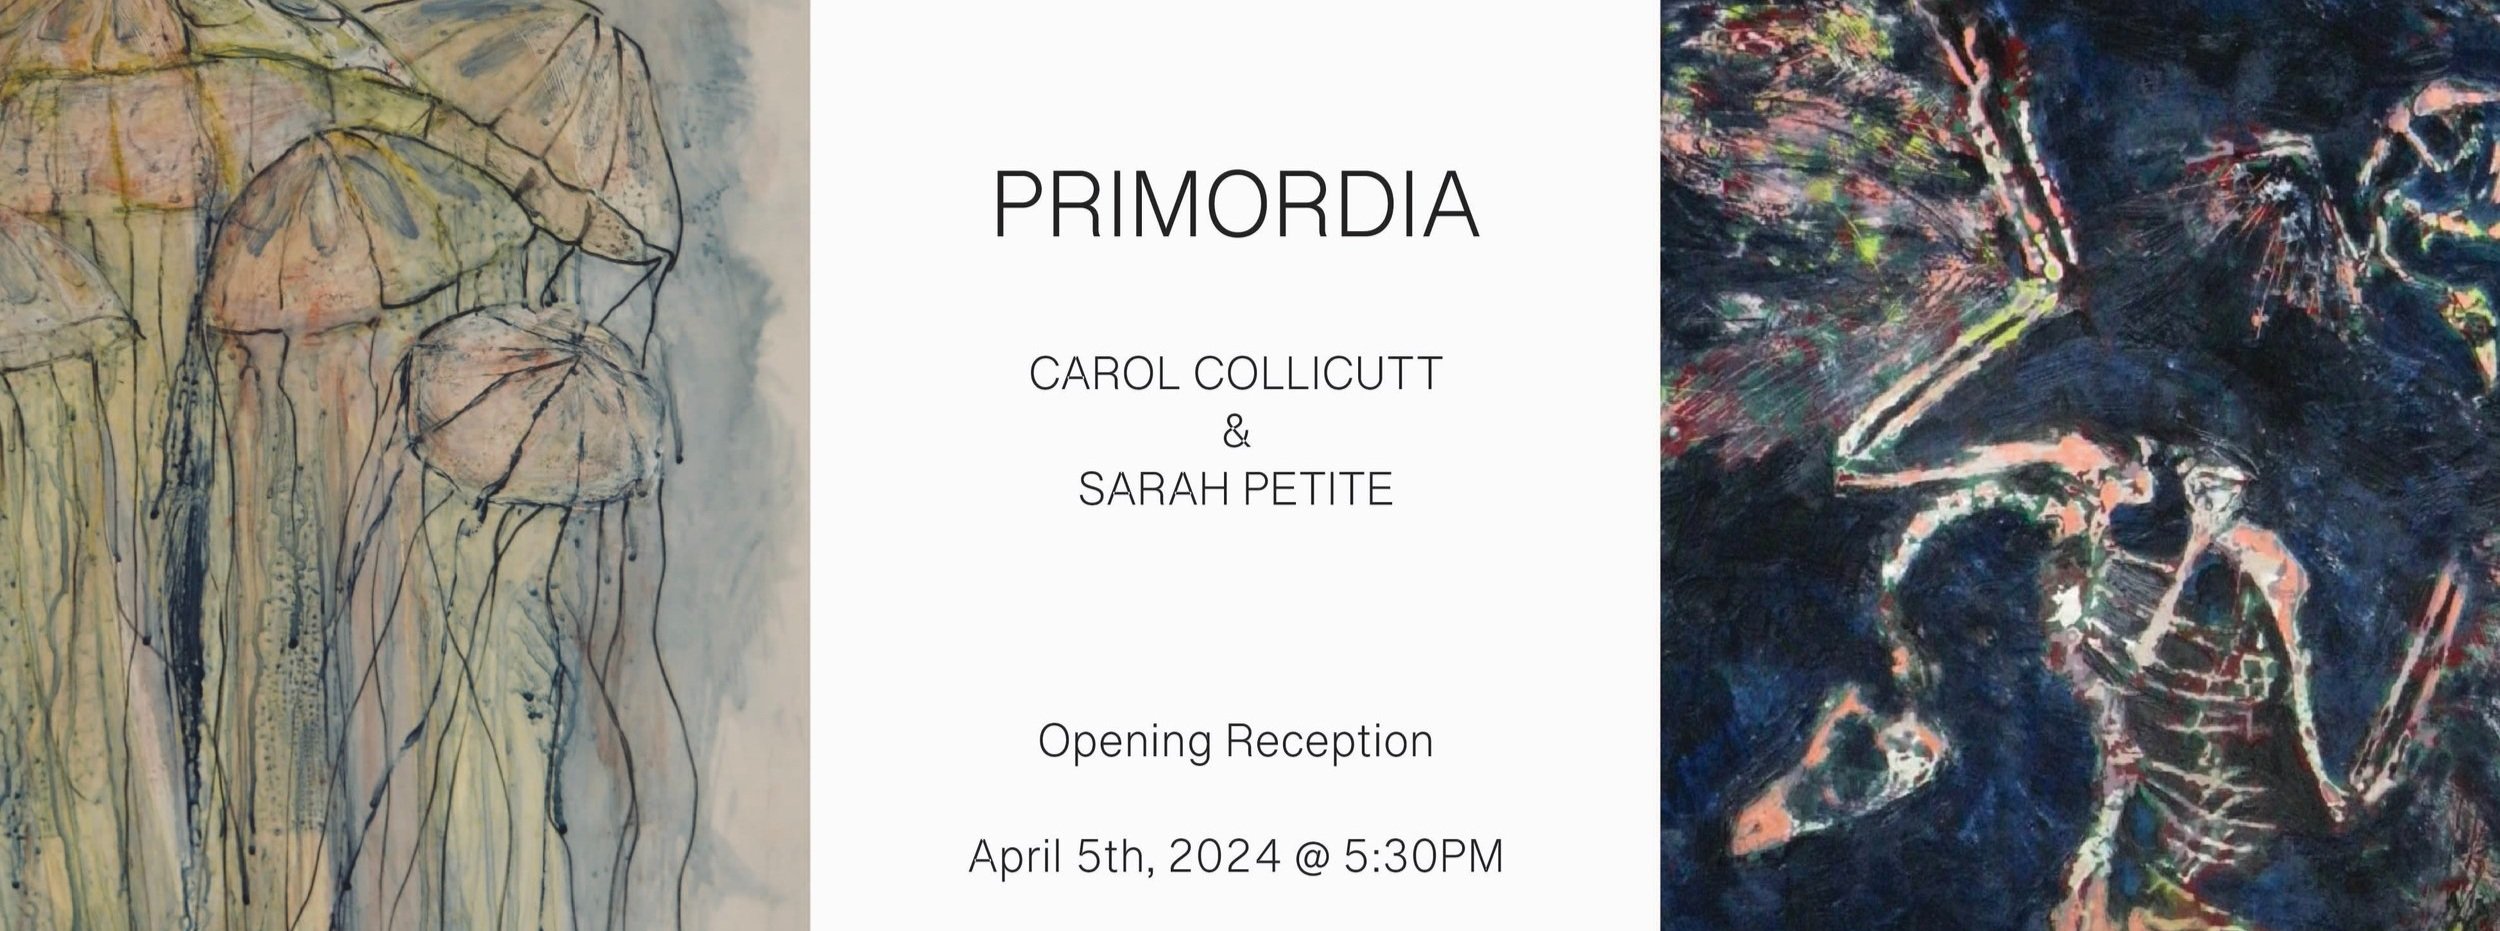 Primordia 2024 - Carol Collicutt / Sarah Petite